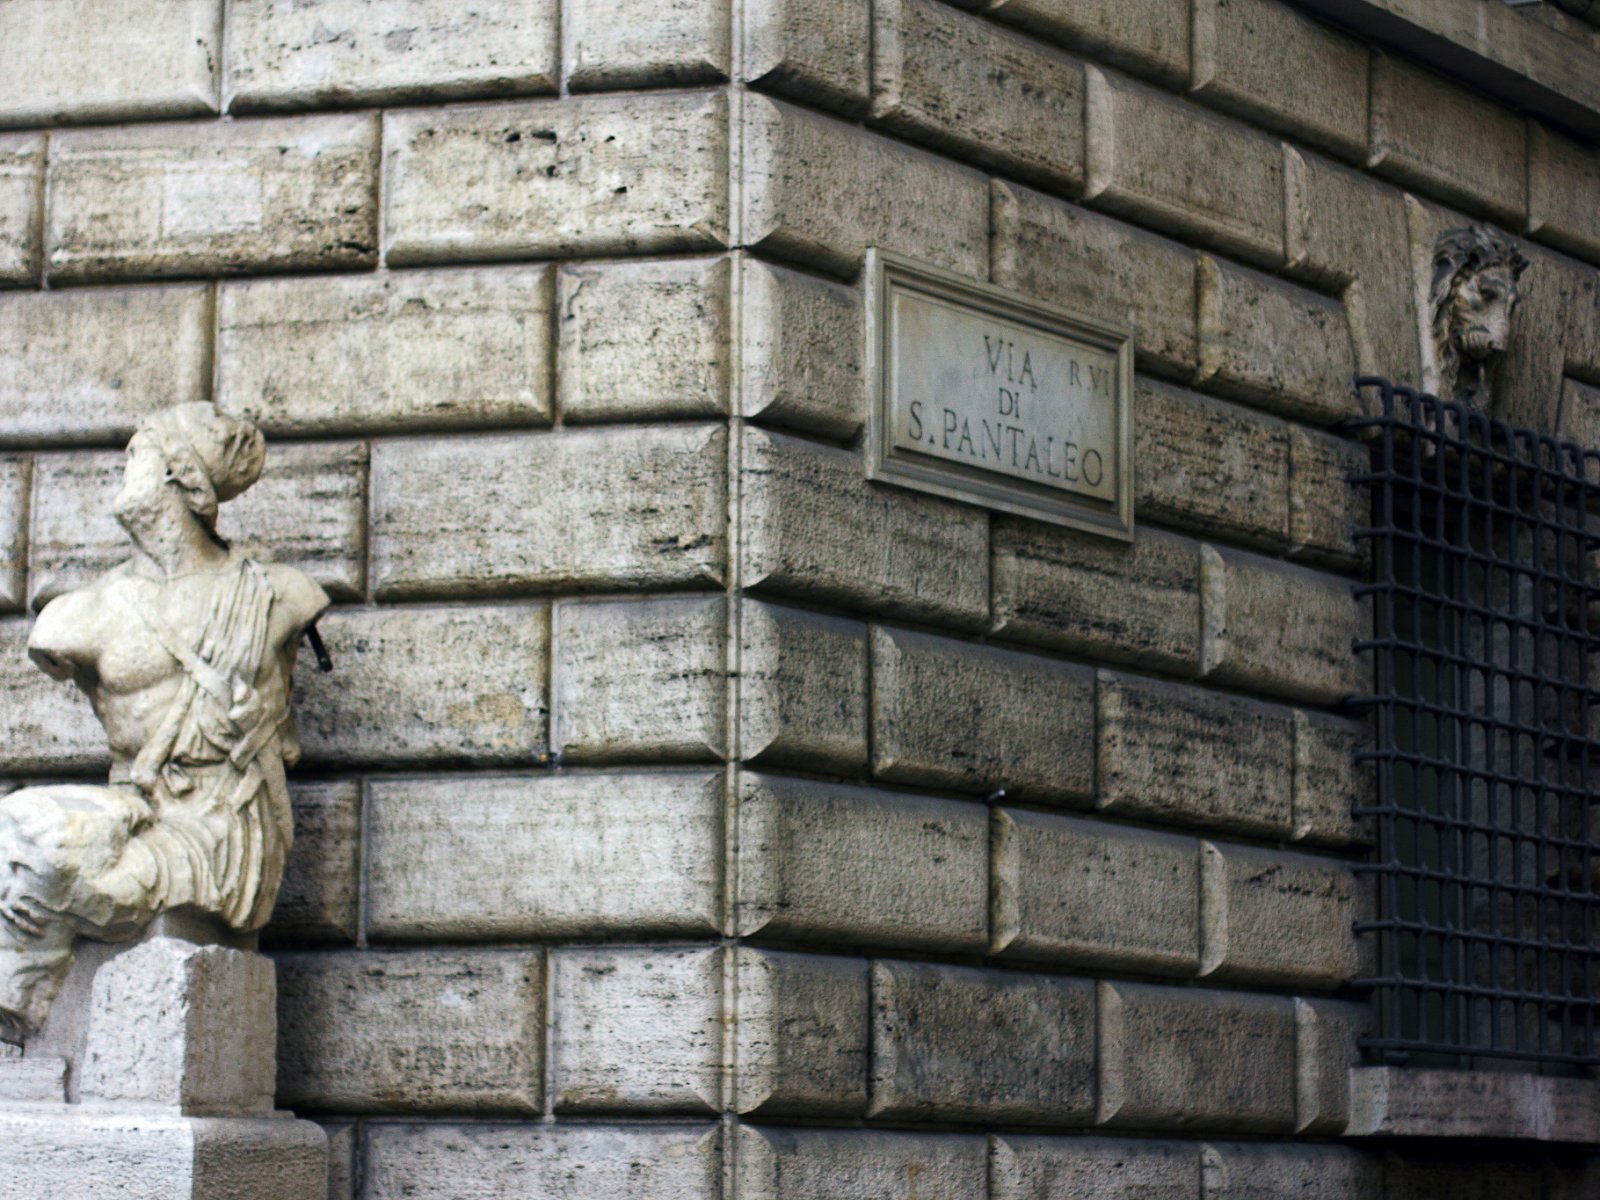 Piazza di Pasquino, Rome